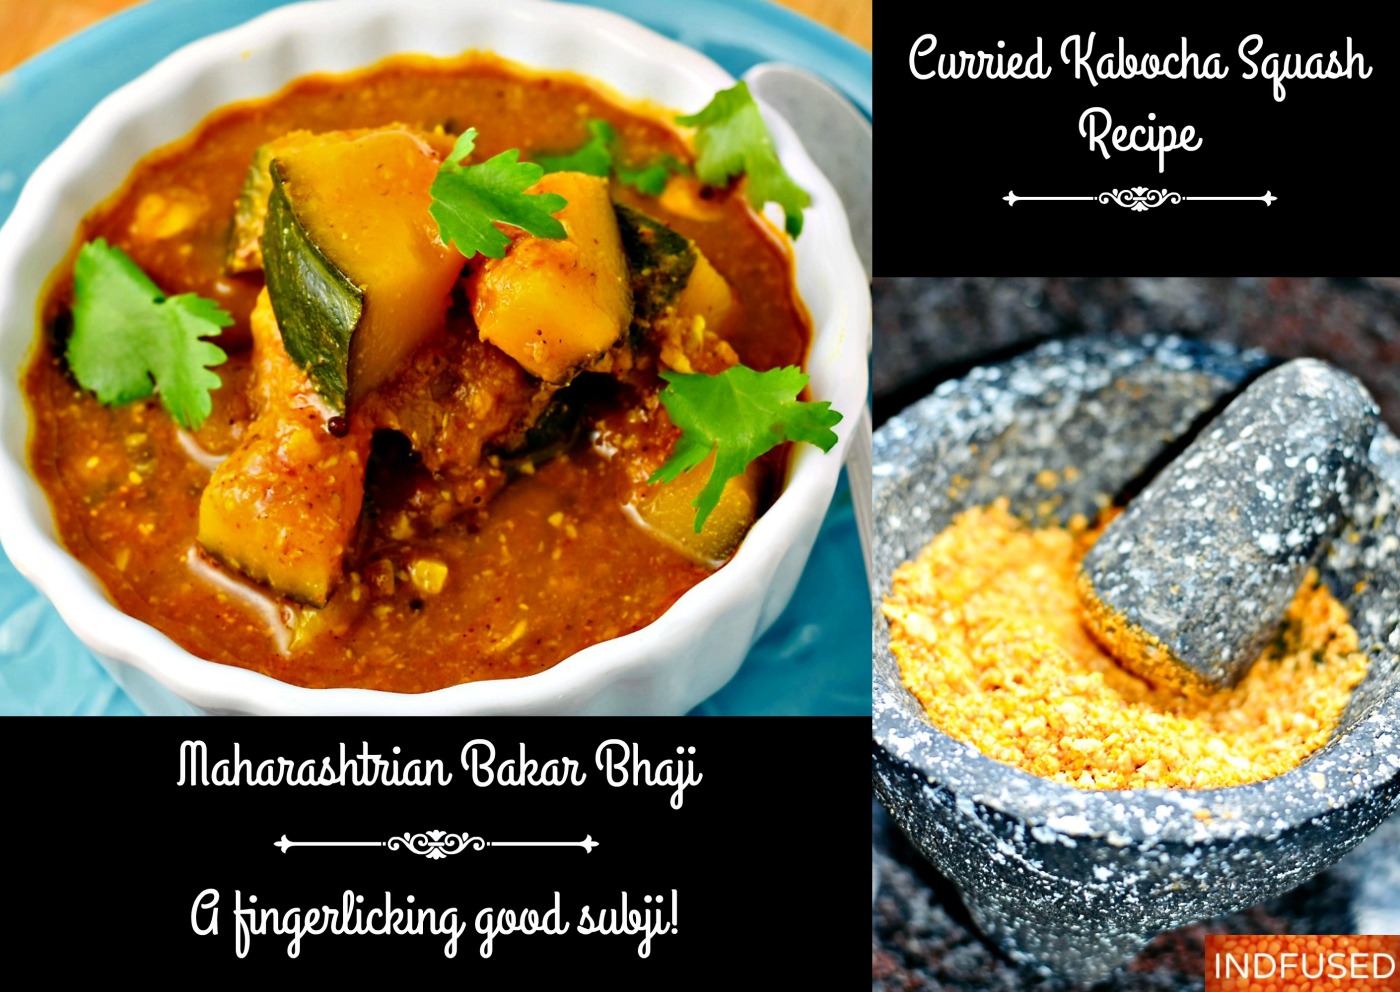 Curried Kabocha Squash Recipe also called Bhoplyachi bakar bhaji from Maharashtra, India.